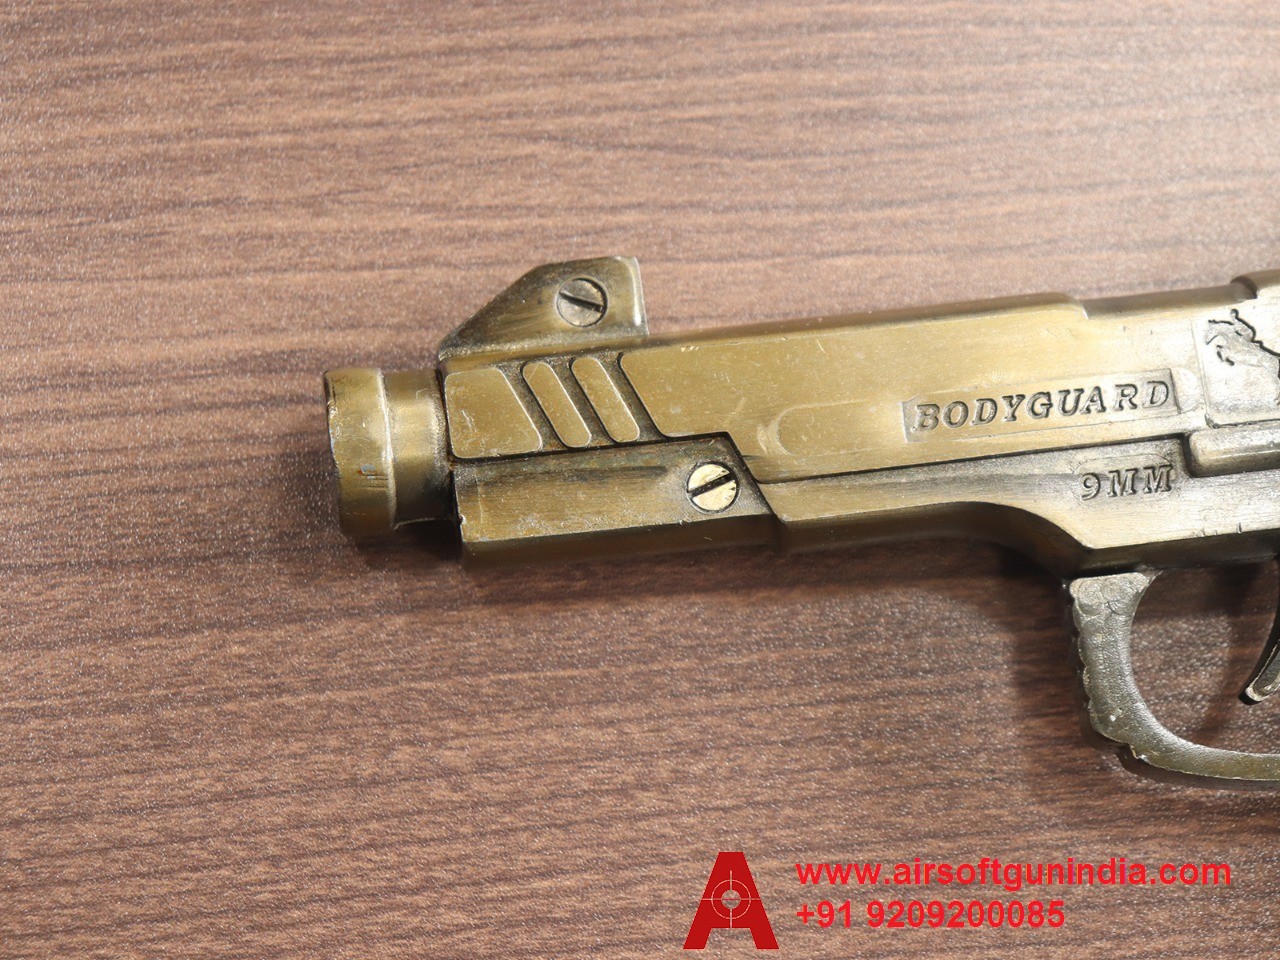 Cork Toy Sound Gun Gold Texture By Airsoft Gun India